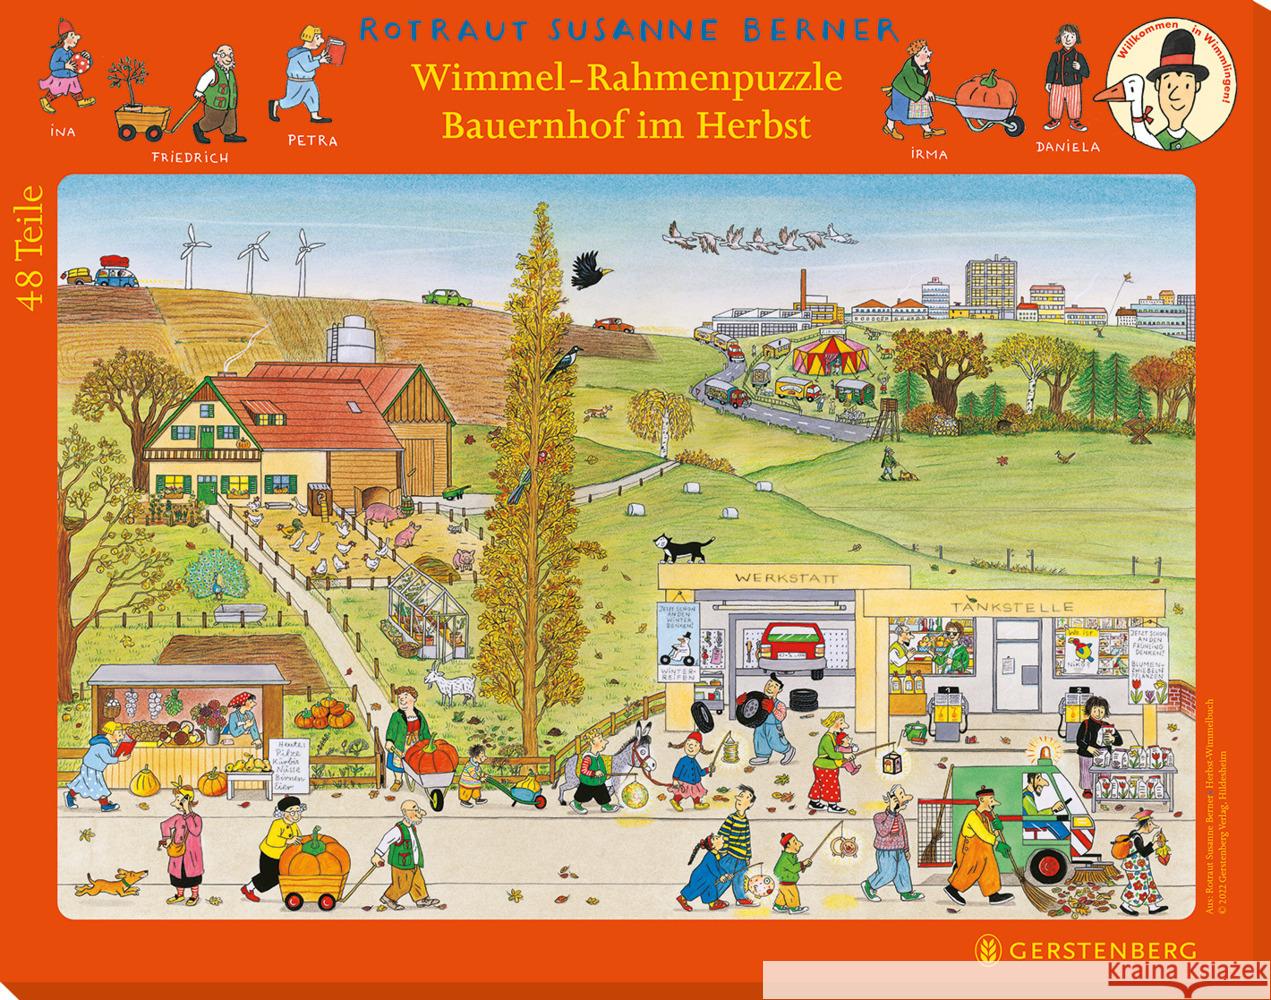 Wimmel-Rahmenpuzzle Herbst Motiv Bauernhof Berner, Rotraut Susanne 4250915935713 Gerstenberg Verlag - książka